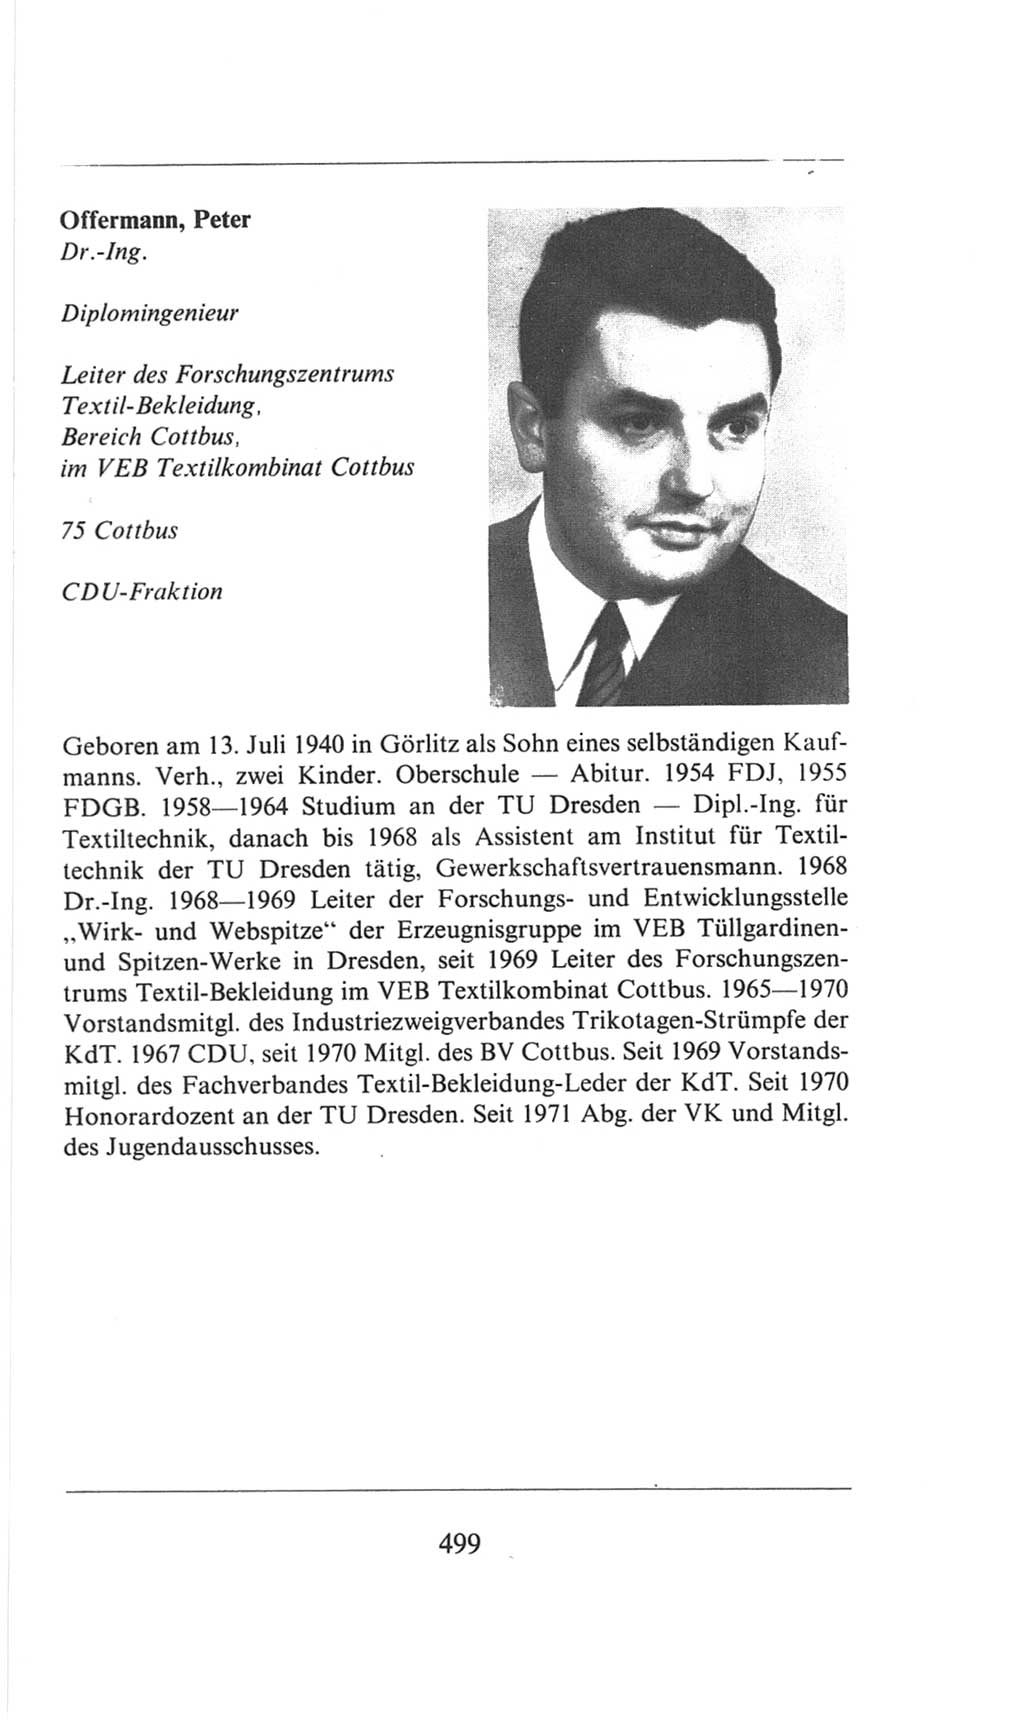 Volkskammer (VK) der Deutschen Demokratischen Republik (DDR), 6. Wahlperiode 1971-1976, Seite 499 (VK. DDR 6. WP. 1971-1976, S. 499)